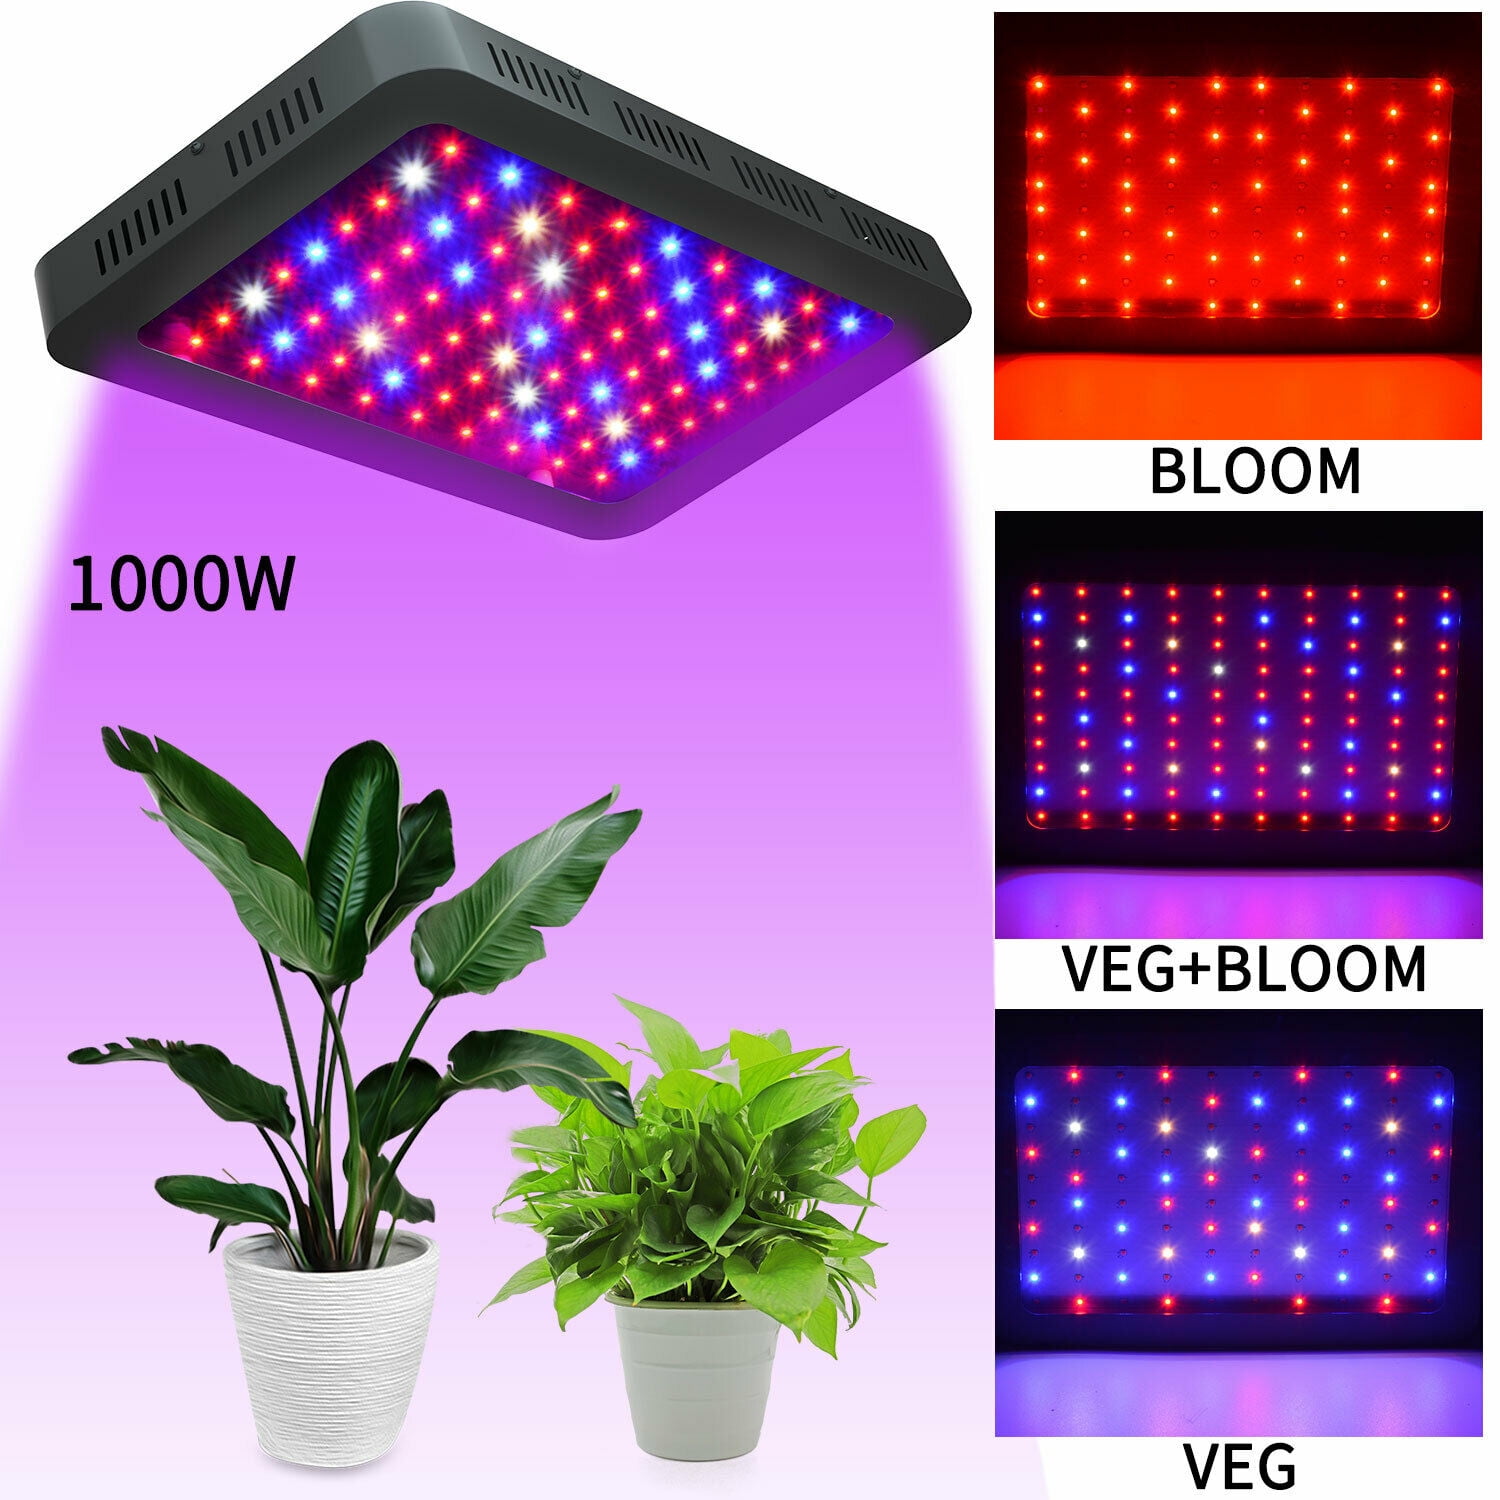 1000W Full Spectrum Hydro LED Grow Light Kit For Indoor Plants Veg Flower Bloom 